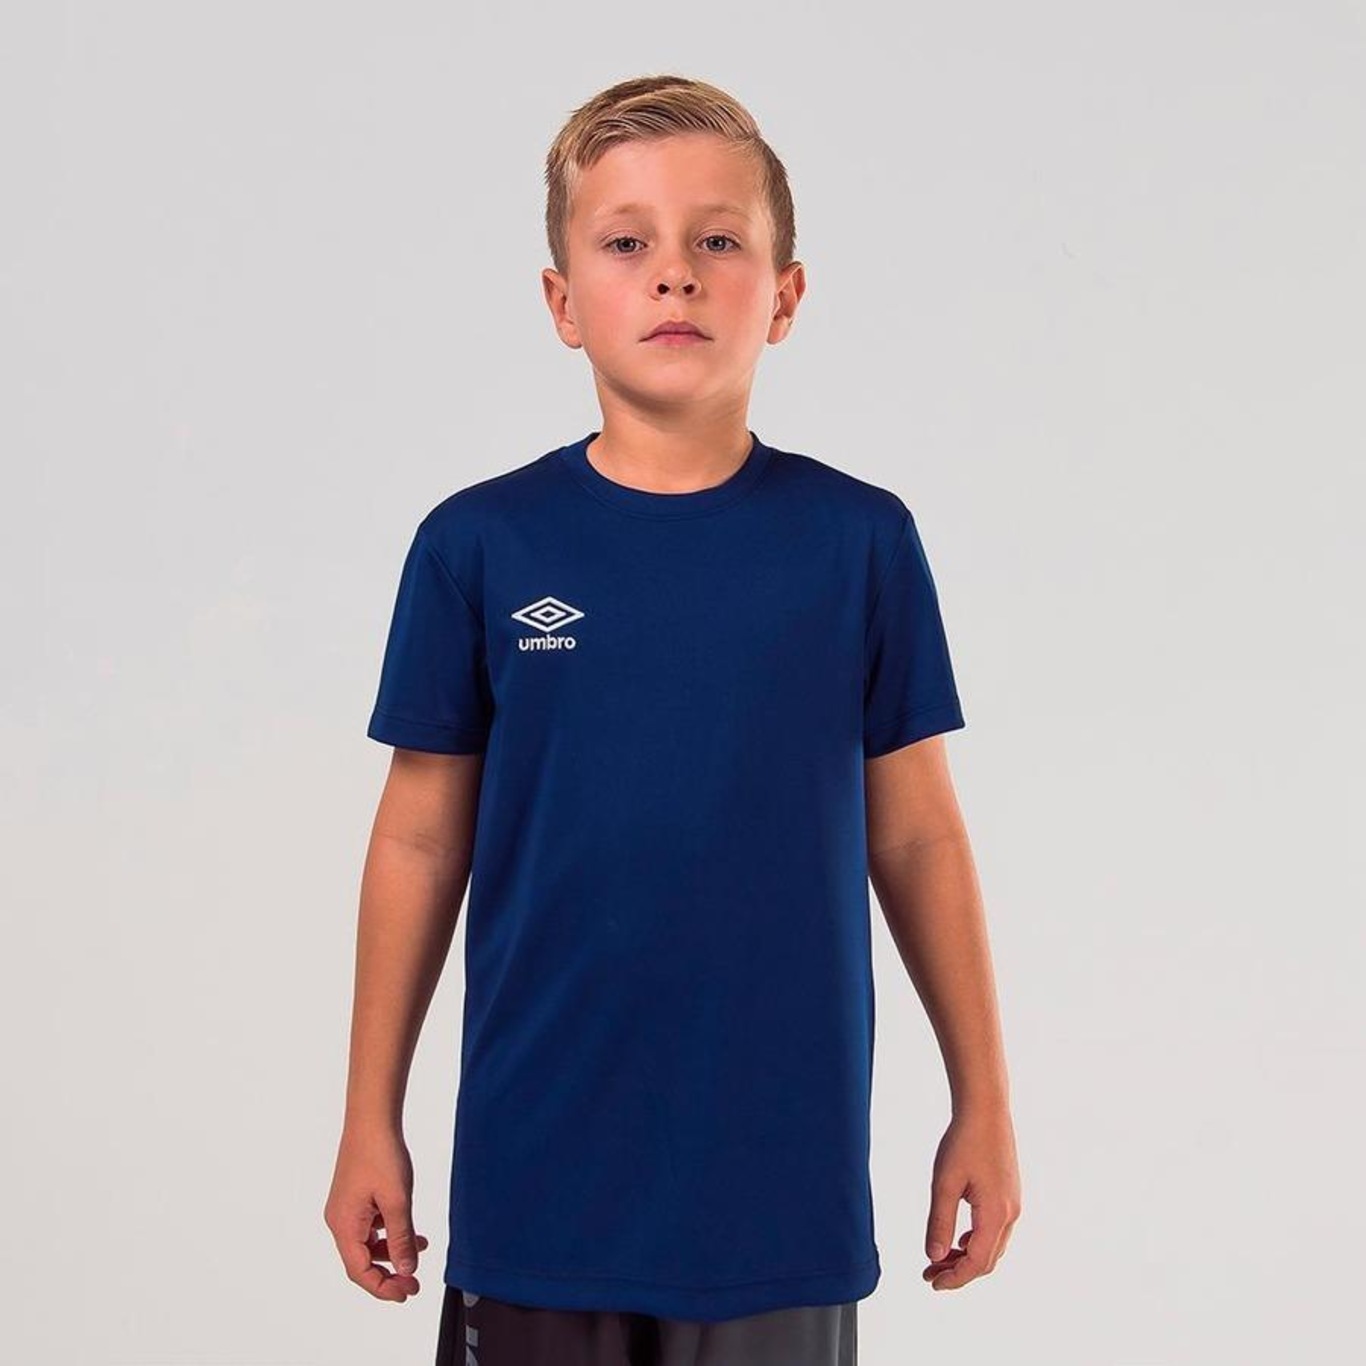 Camiseta Umbro Twr Striker - Infantil - Foto 1